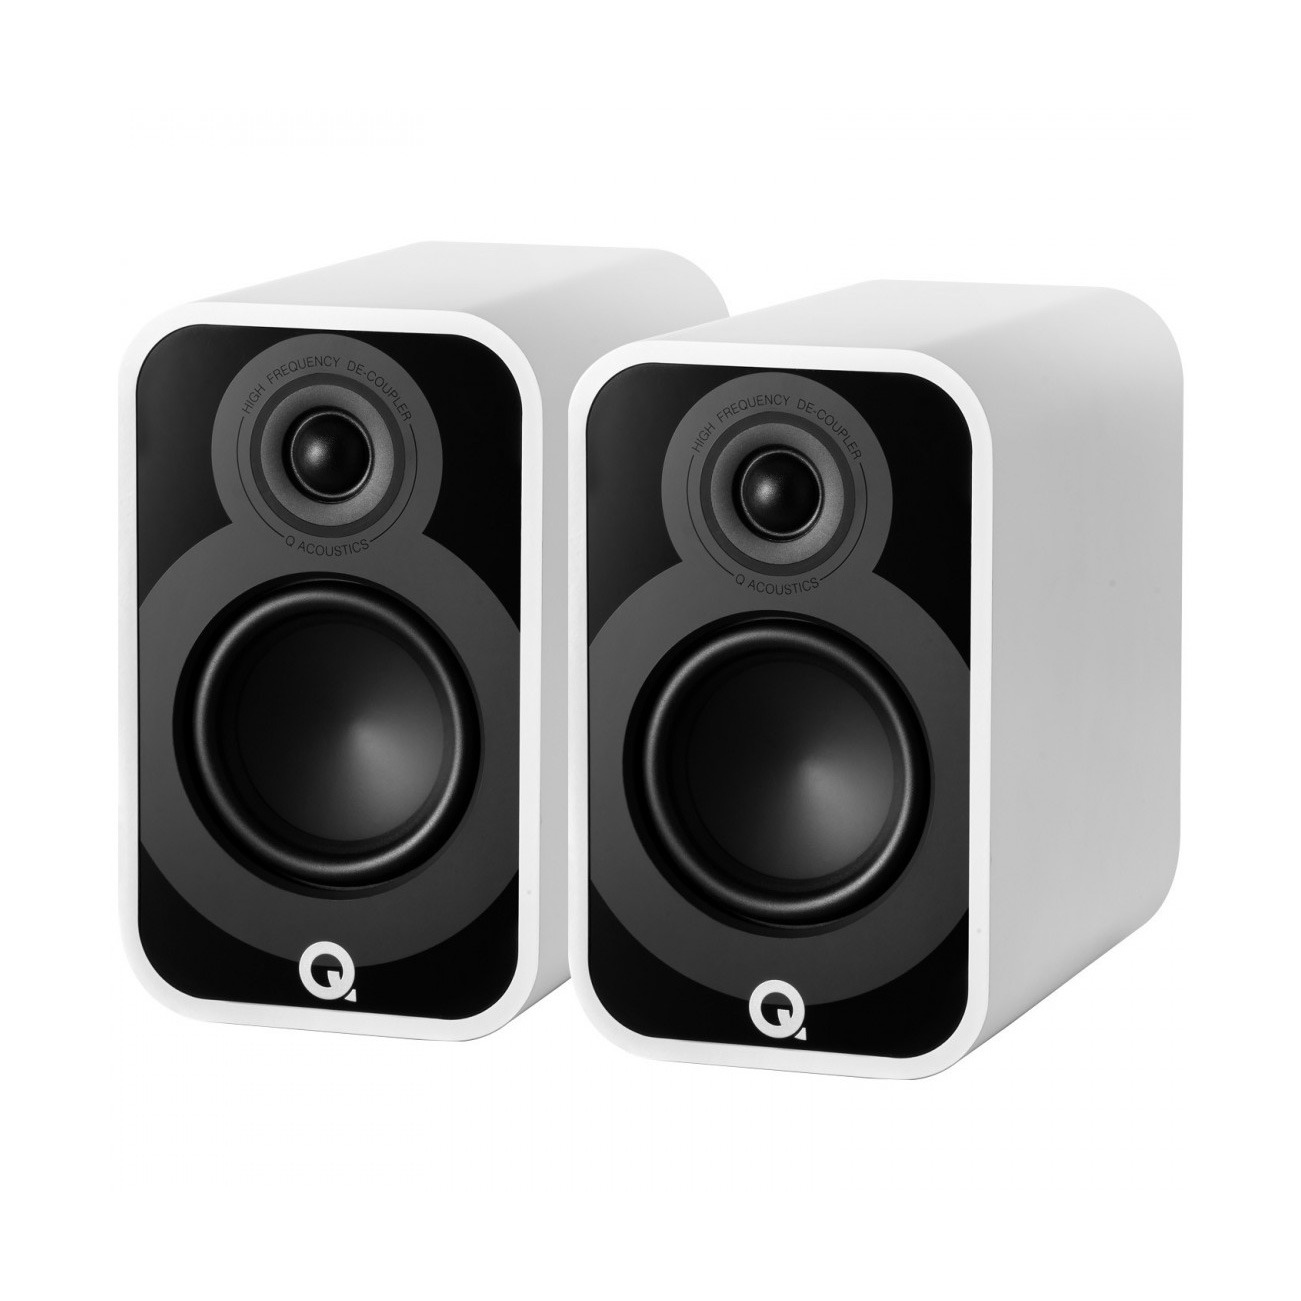 Полочная акустика Q-Acoustics Q5020 (QA5024) Satin White полочная акустика jamo c 93 ii white oak